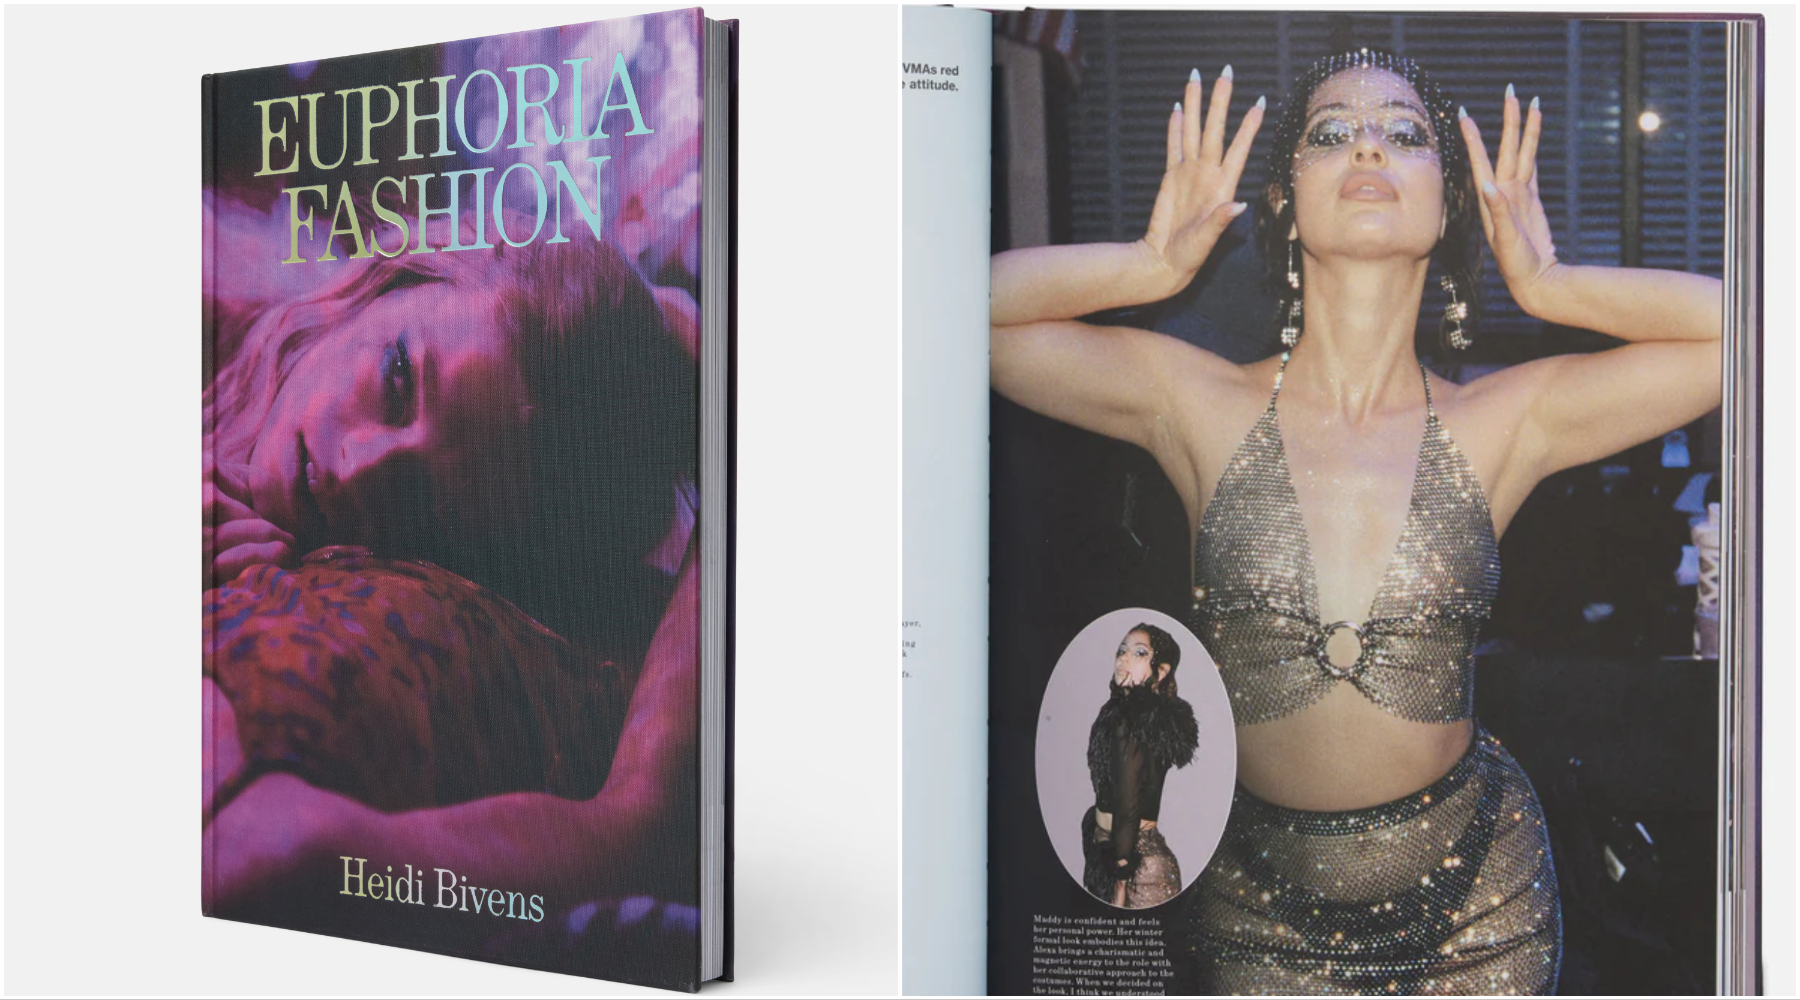 Kostimografkinja Heidi Bivens izdala zvaničnu „Euphoria Fashion“ knjigu